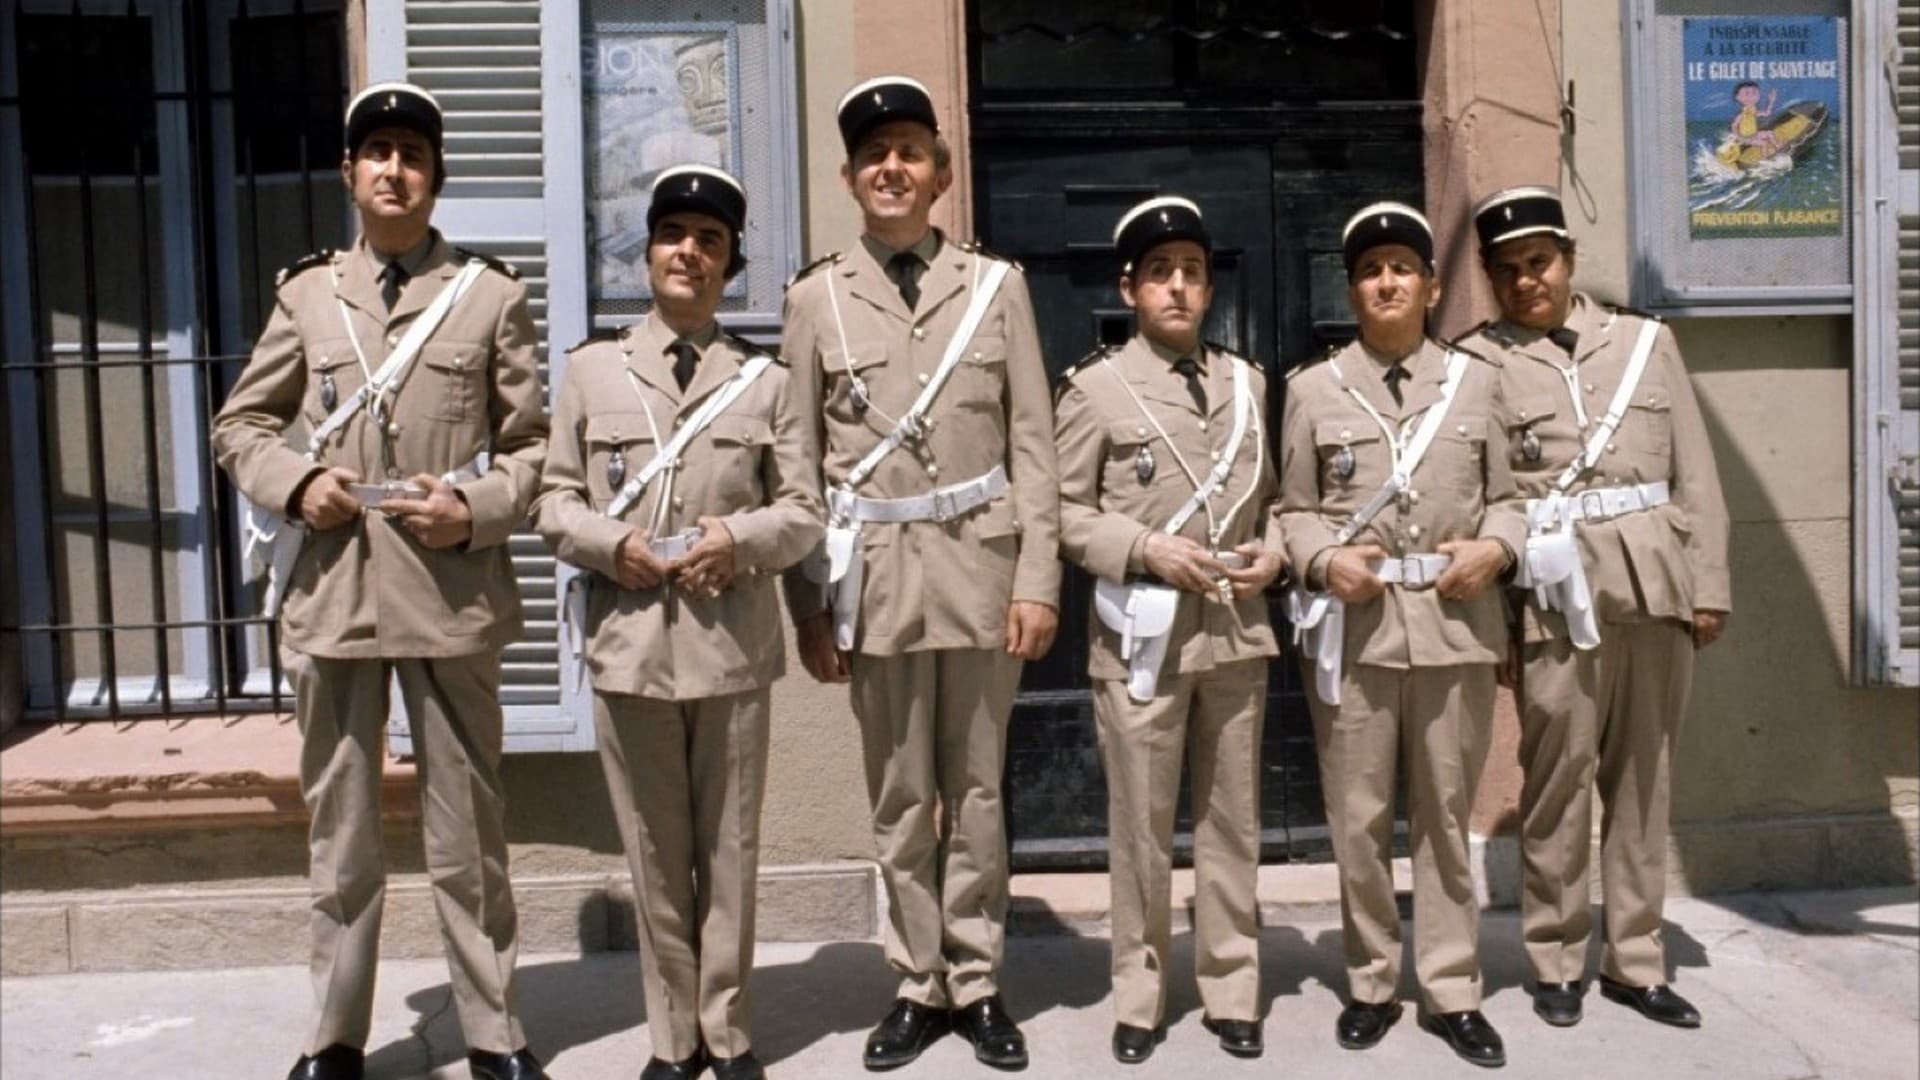 Le Gendarme en balade (1970)